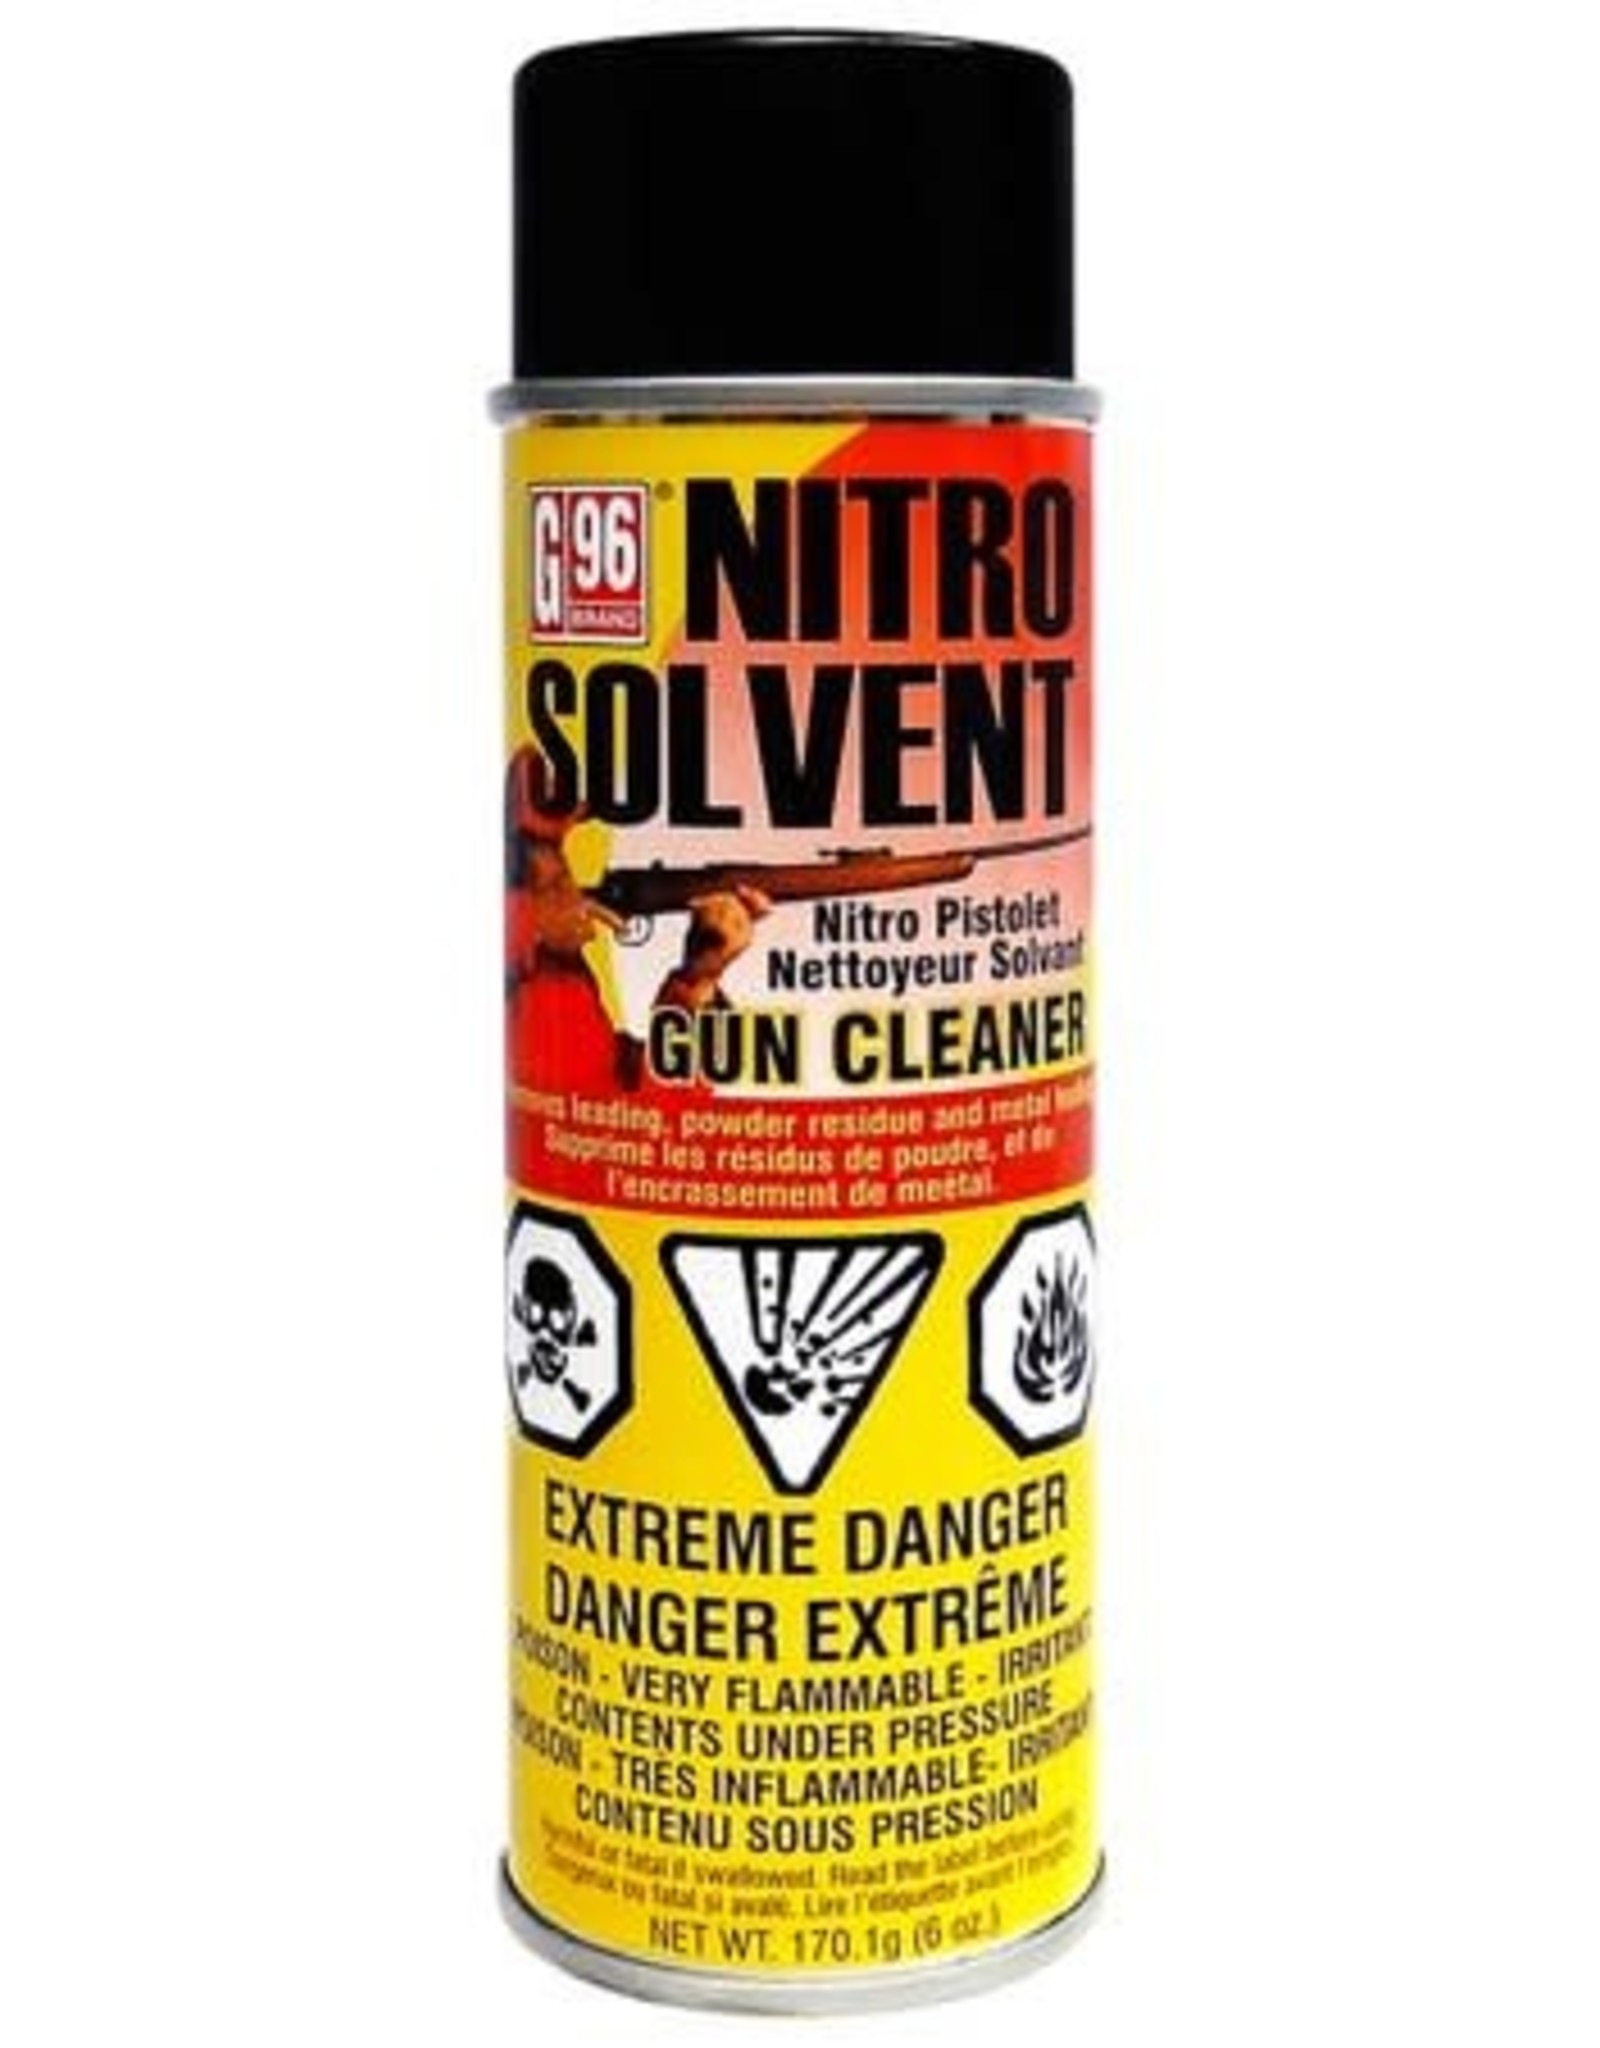 G96 Nitro Solvent Firearm Cleaner